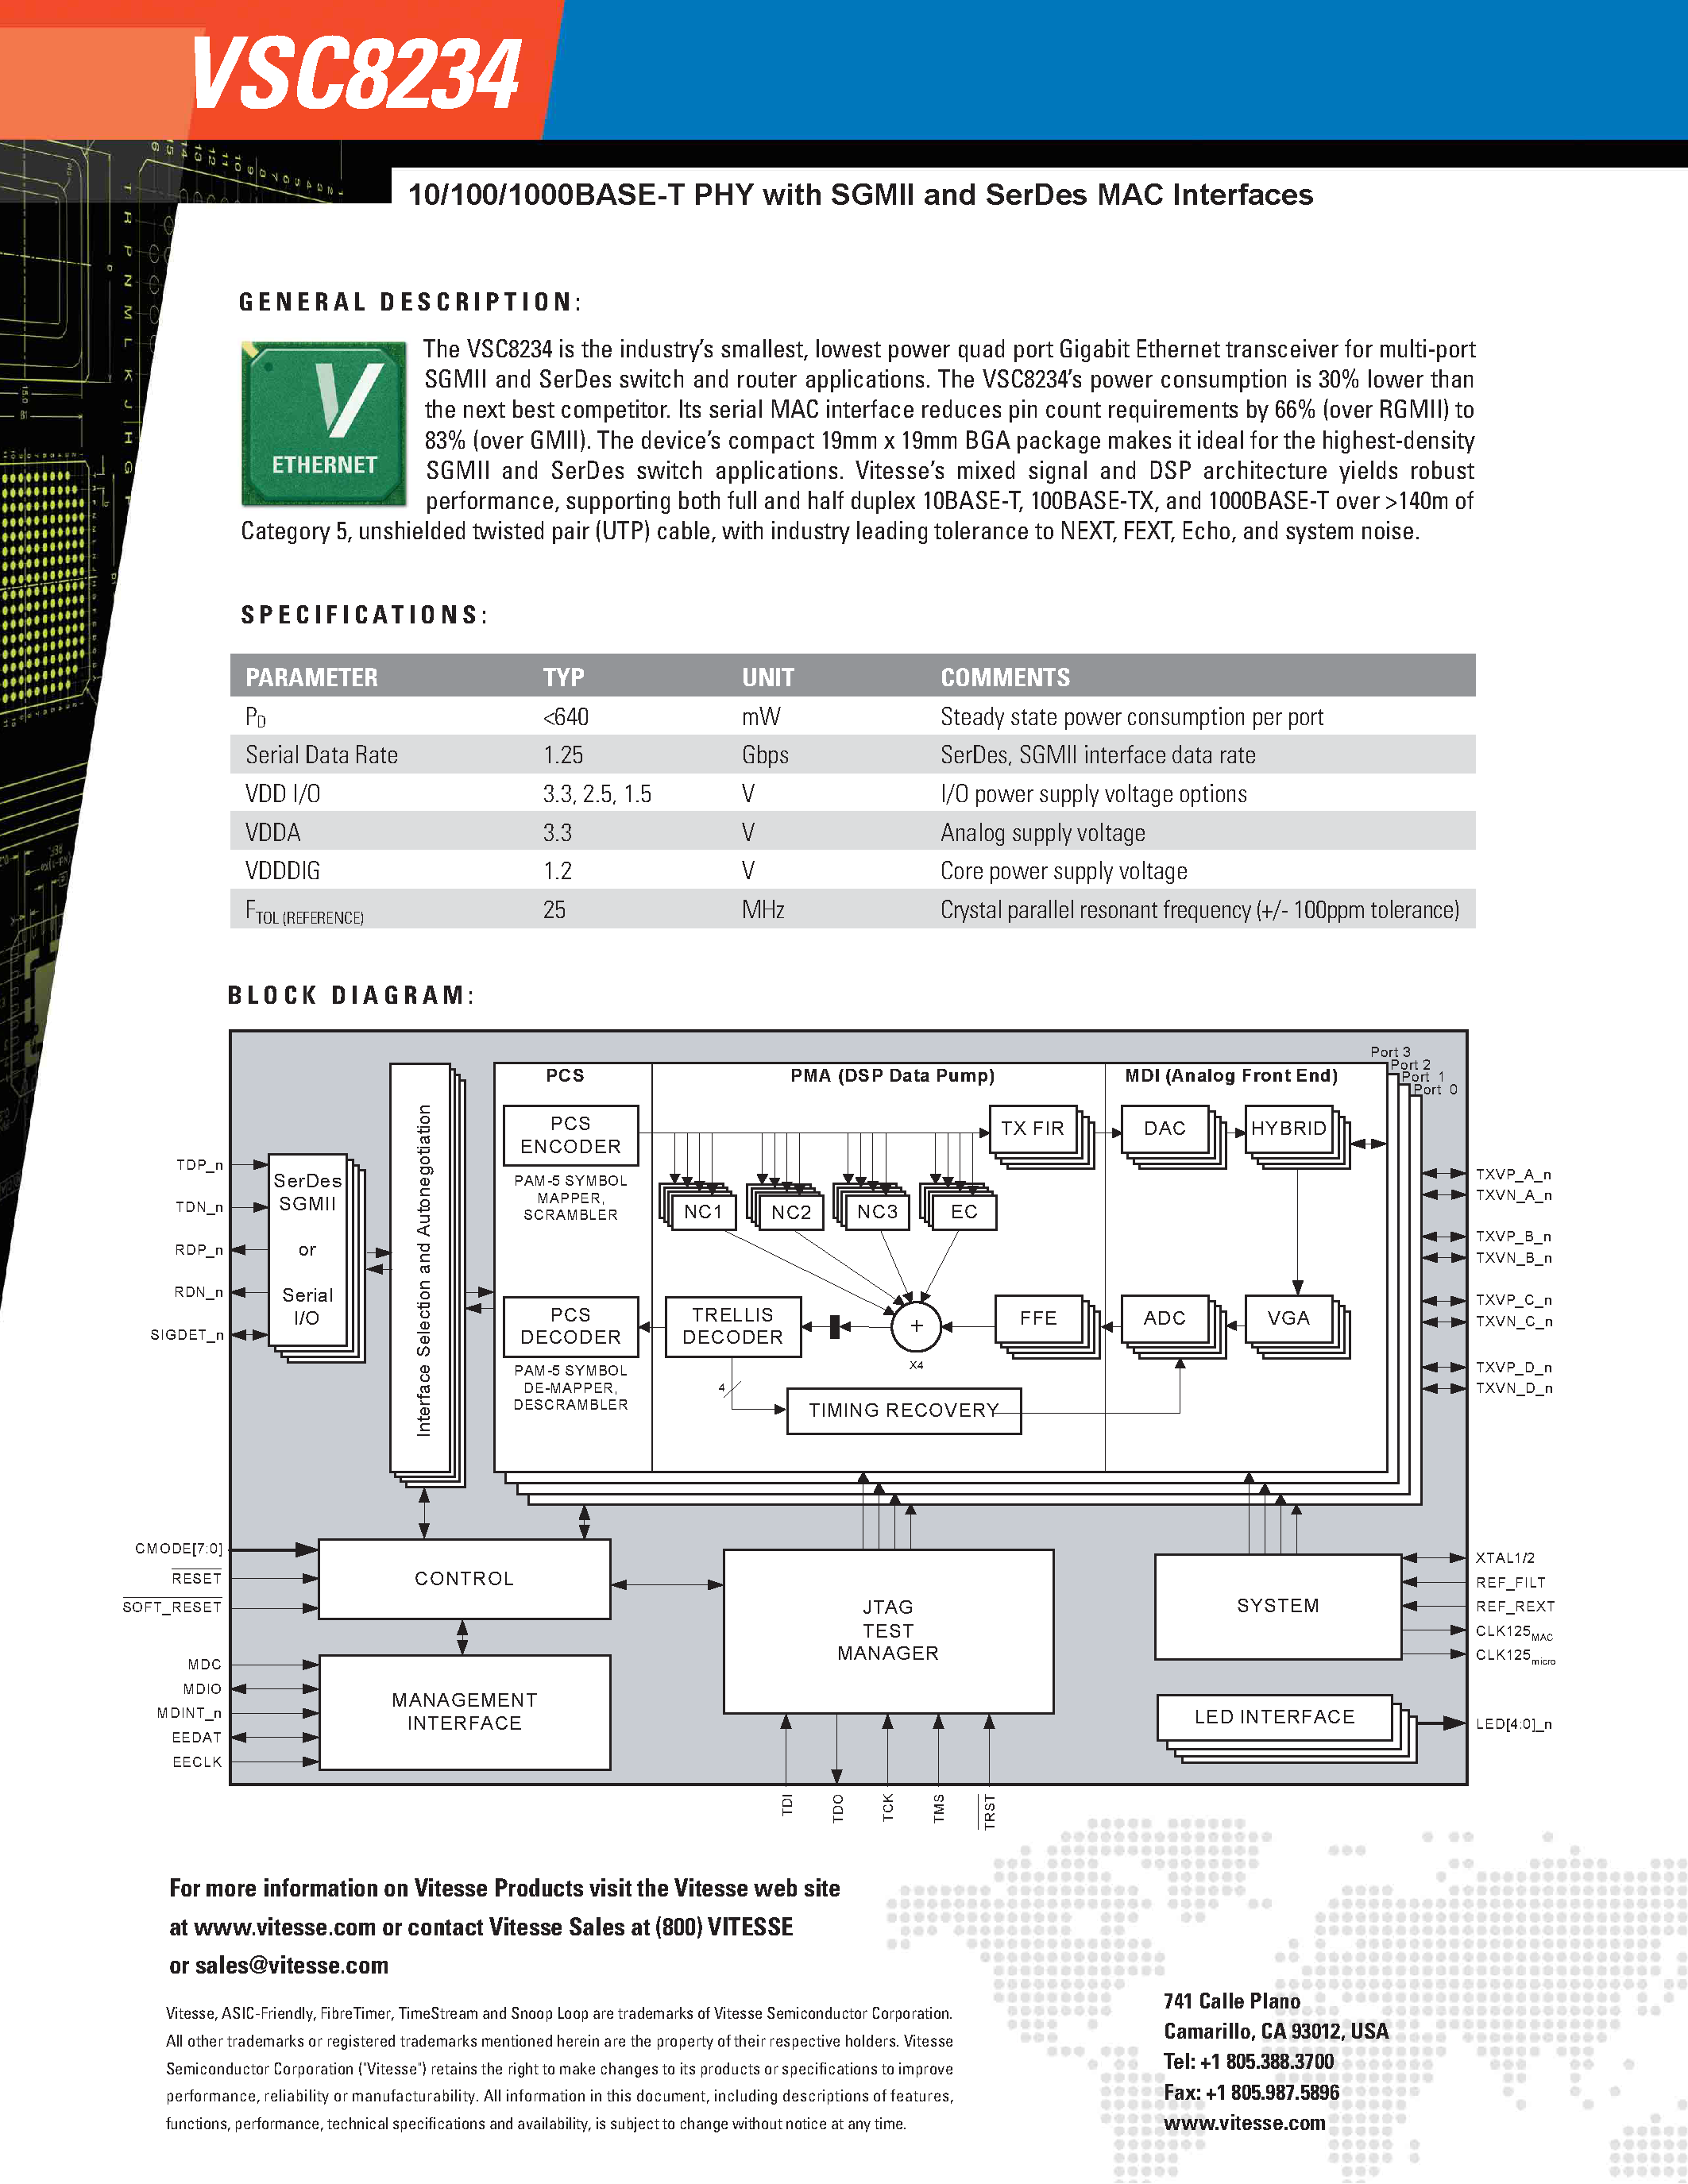 Даташит VSC8234 - Quad Port 10/100/1000 Base-T PHY страница 2